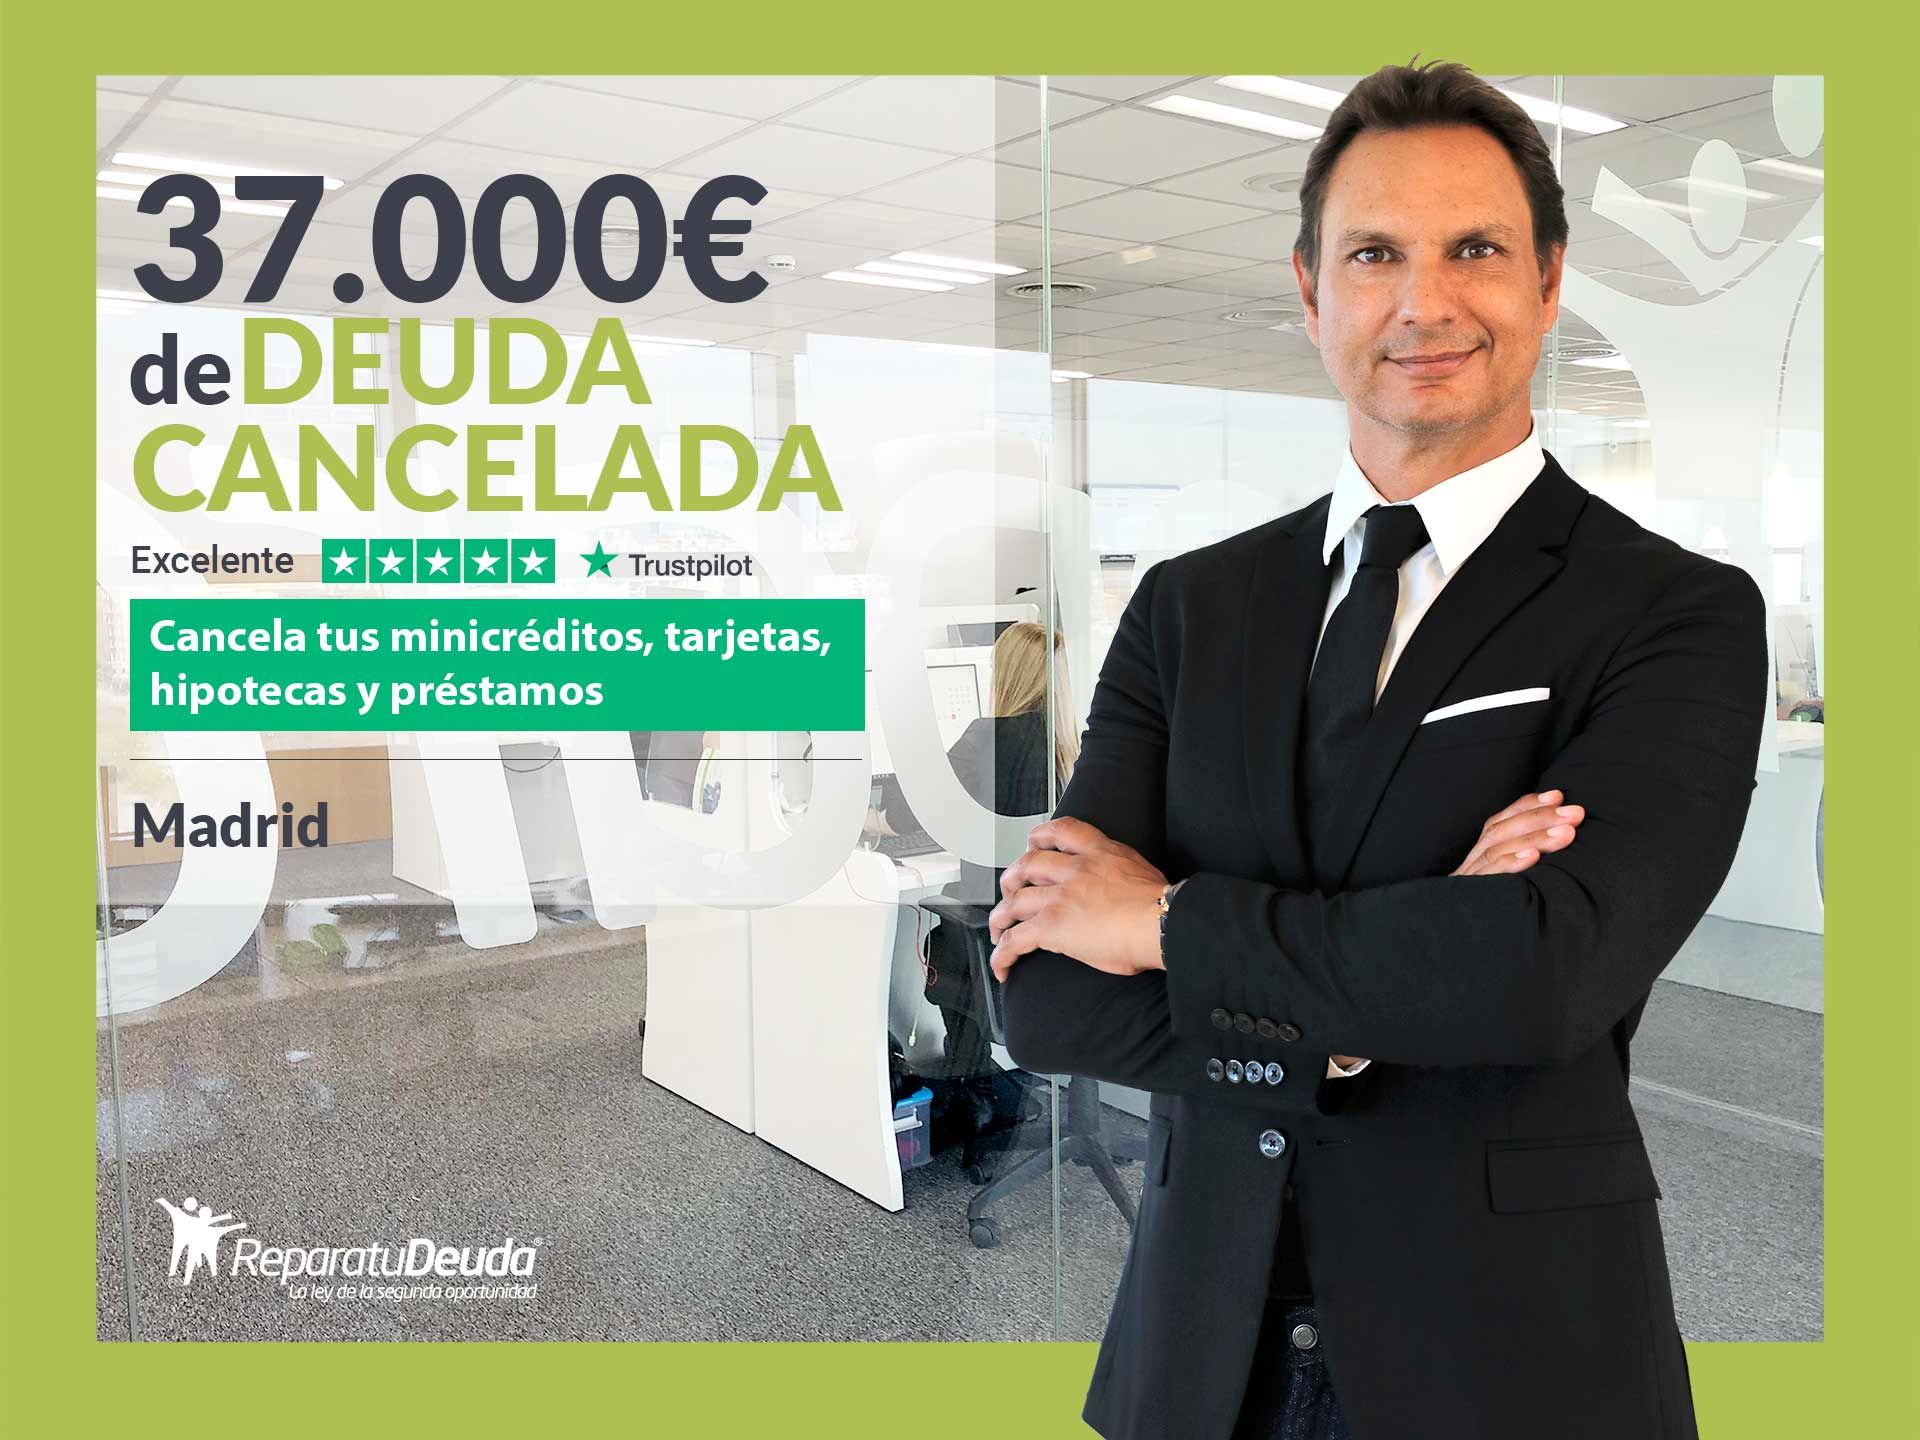 Repara tu Deuda Abogados cancela 37.000? en Madrid con la Ley de Segunda Oportunidad